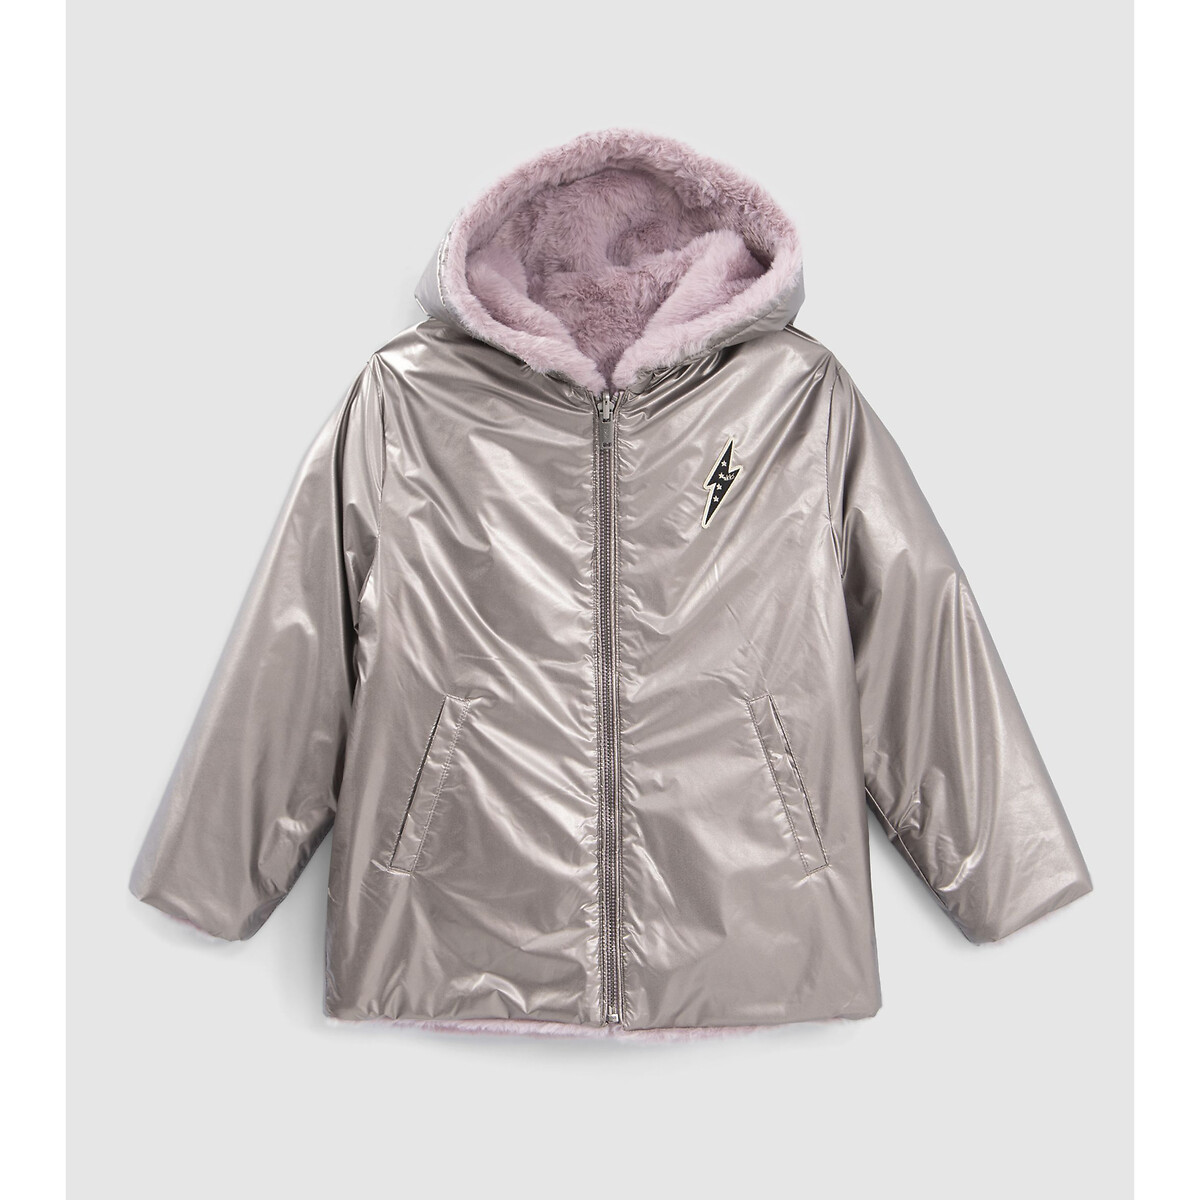 Куртка стеганая с капюшоном с металлическим отливом 6 лет - 114 см розовый парка с капюшоном двухсторонняя 6 лет 114 см каштановый